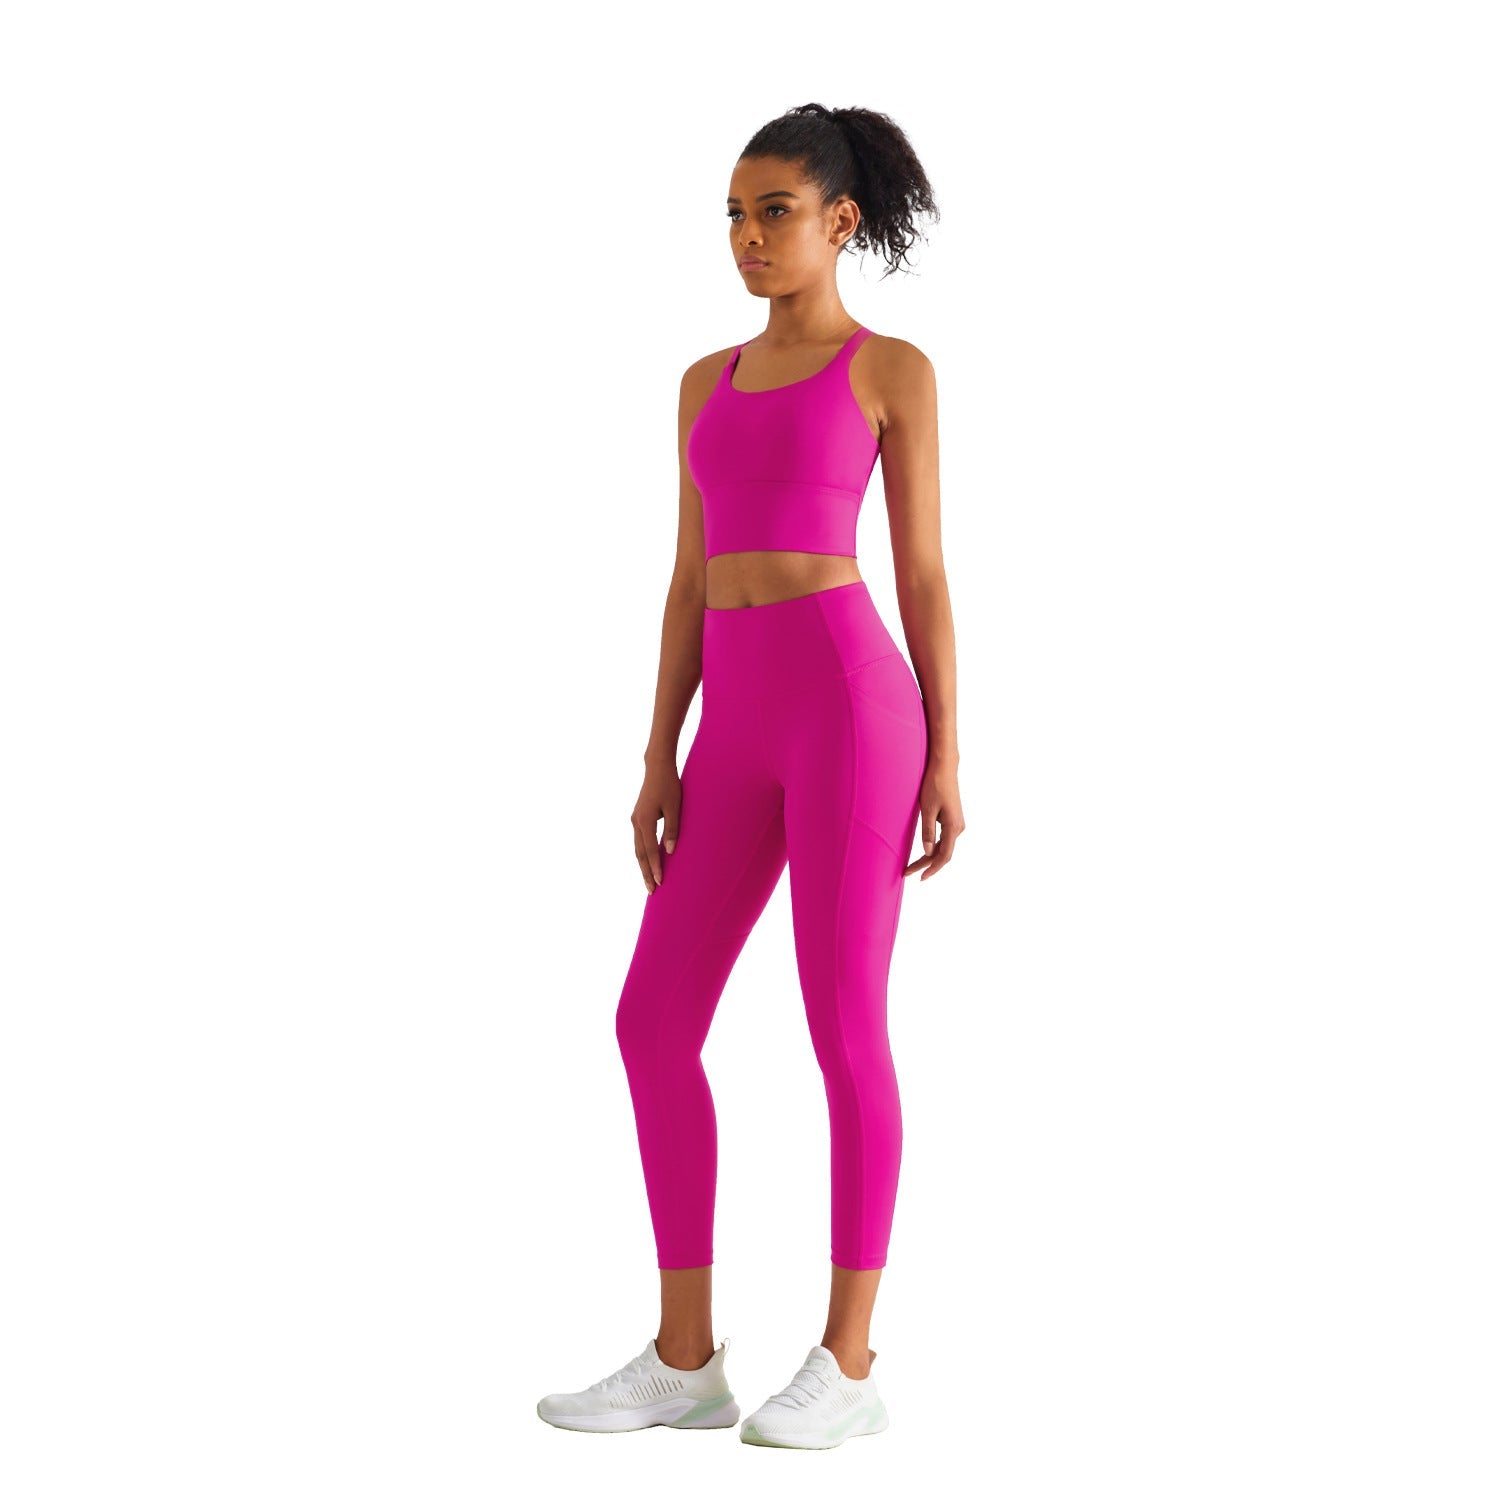 Women Tight Hip Lift Seamless High Waist Fitness Pants with Pockets CK1414